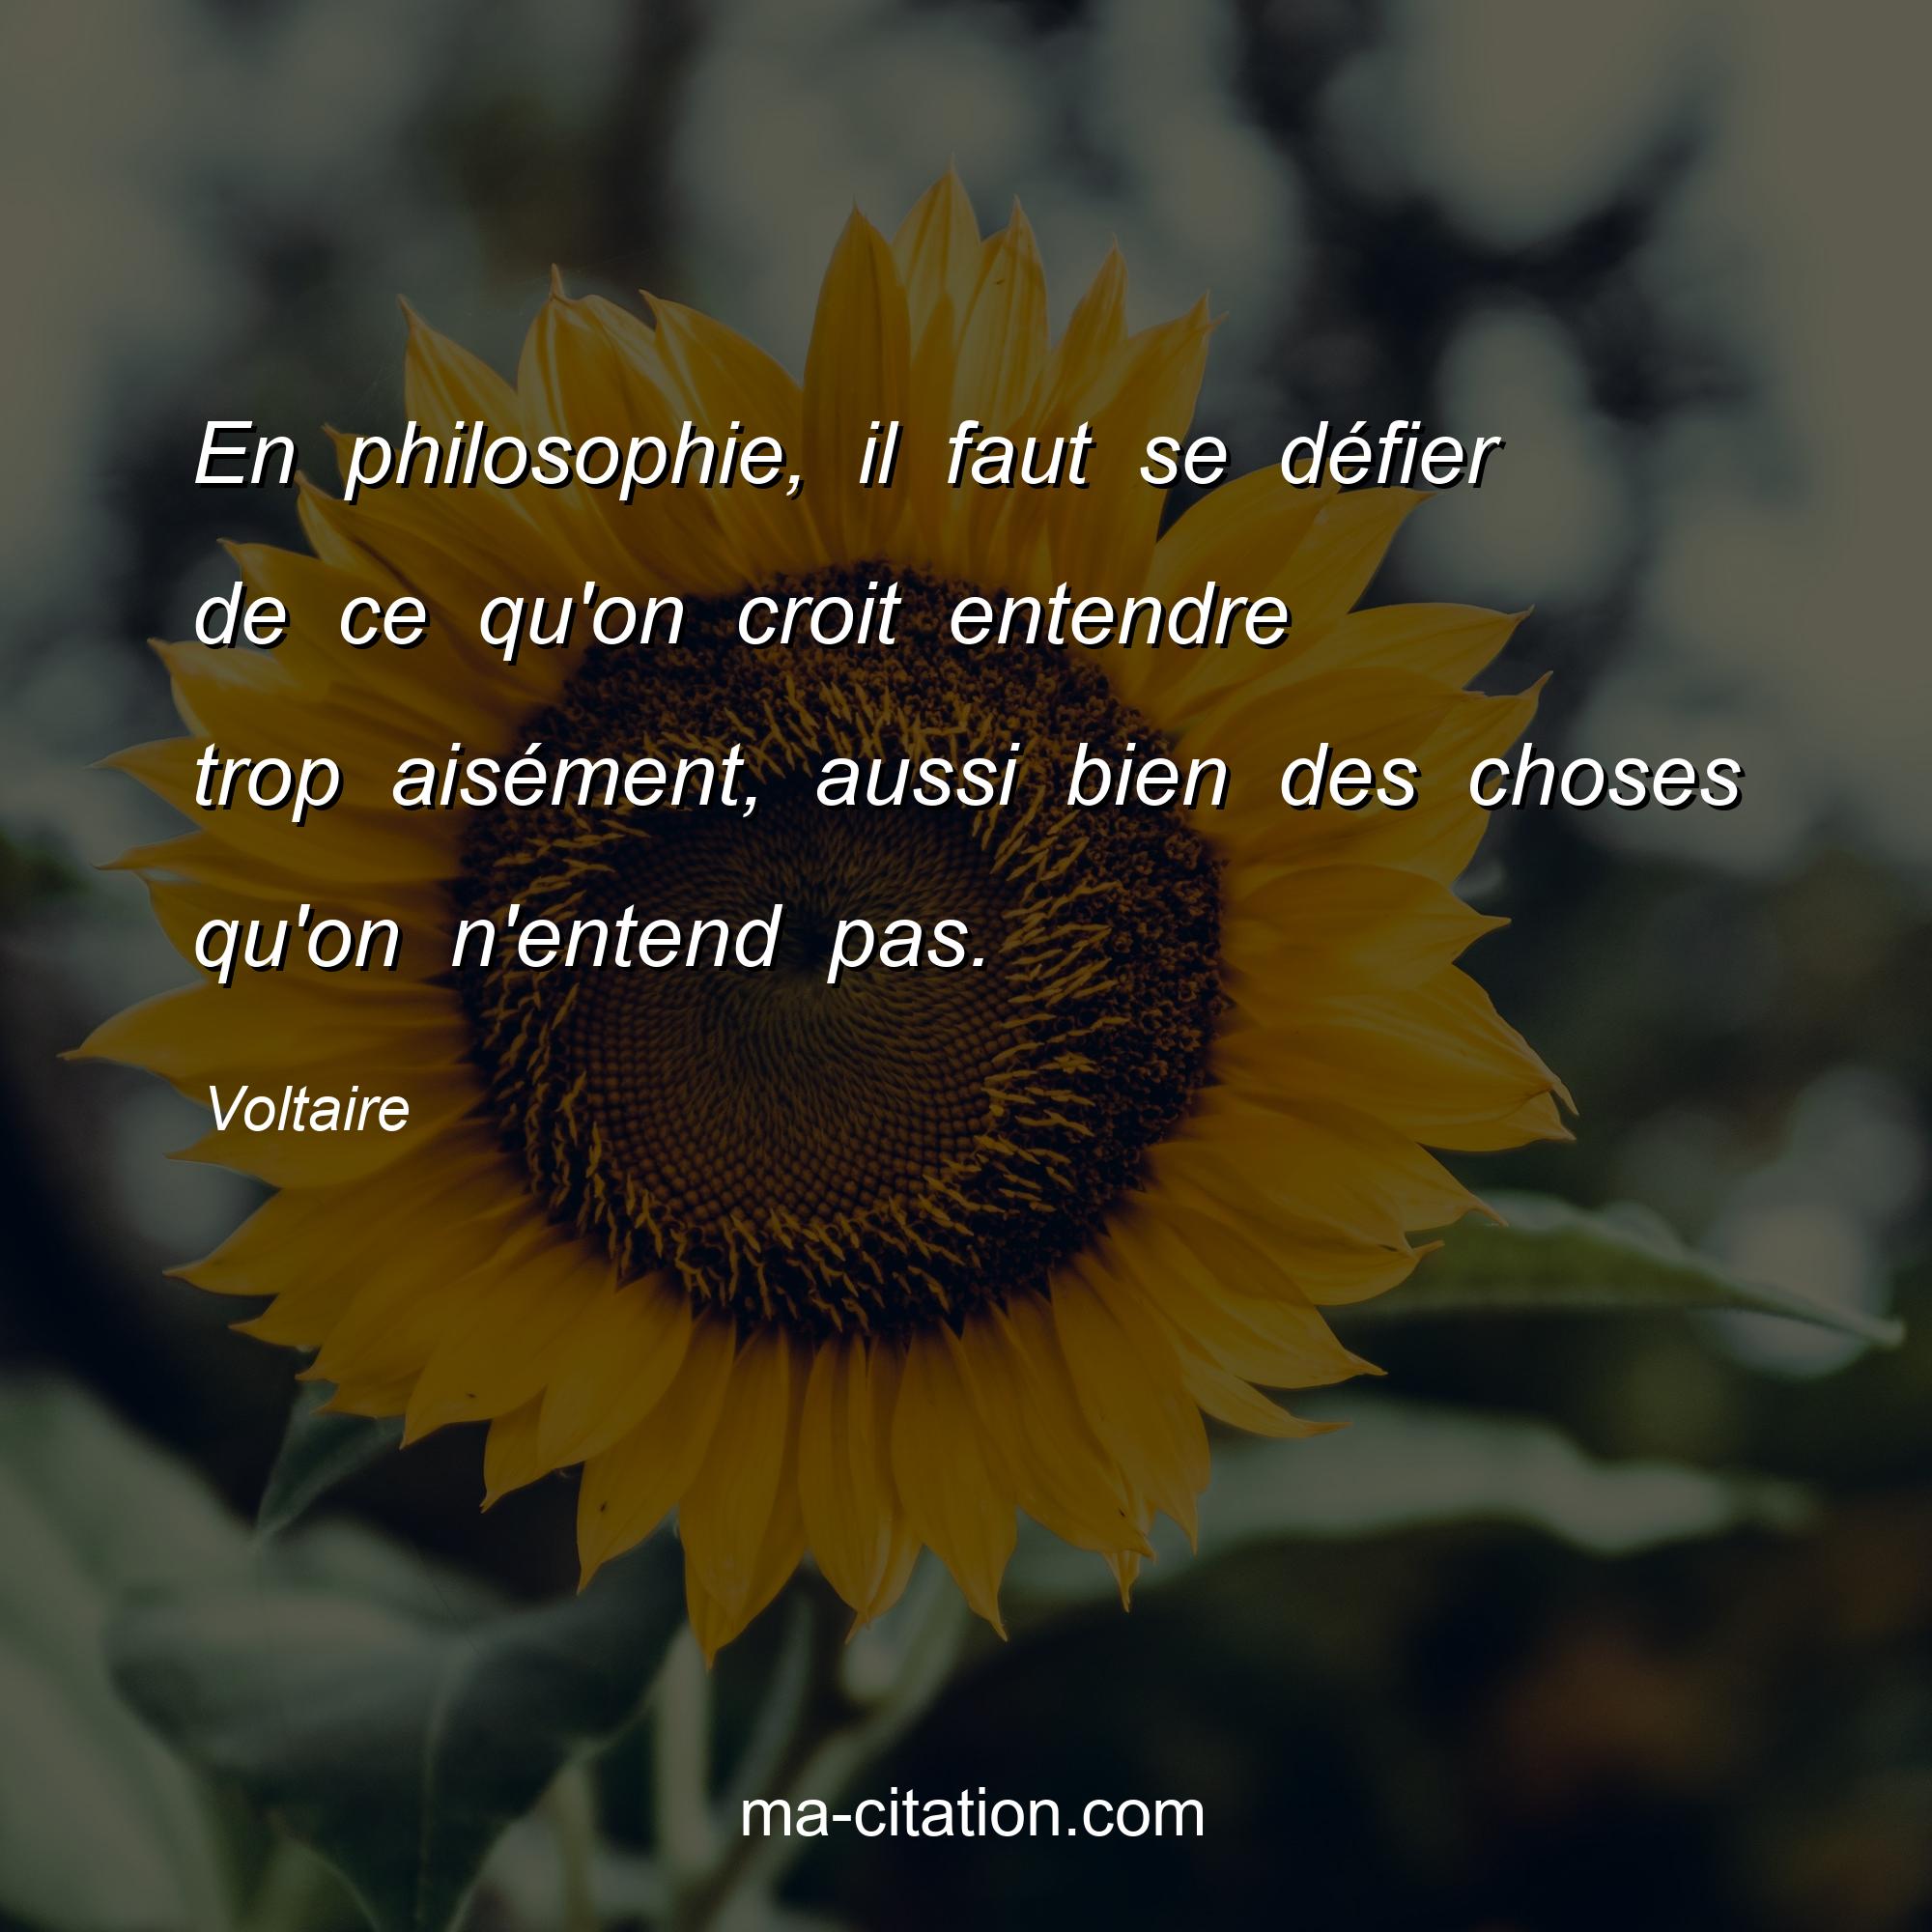 Voltaire : En philosophie, il faut se défier de ce qu'on croit entendre trop aisément, aussi bien des choses qu'on n'entend pas.